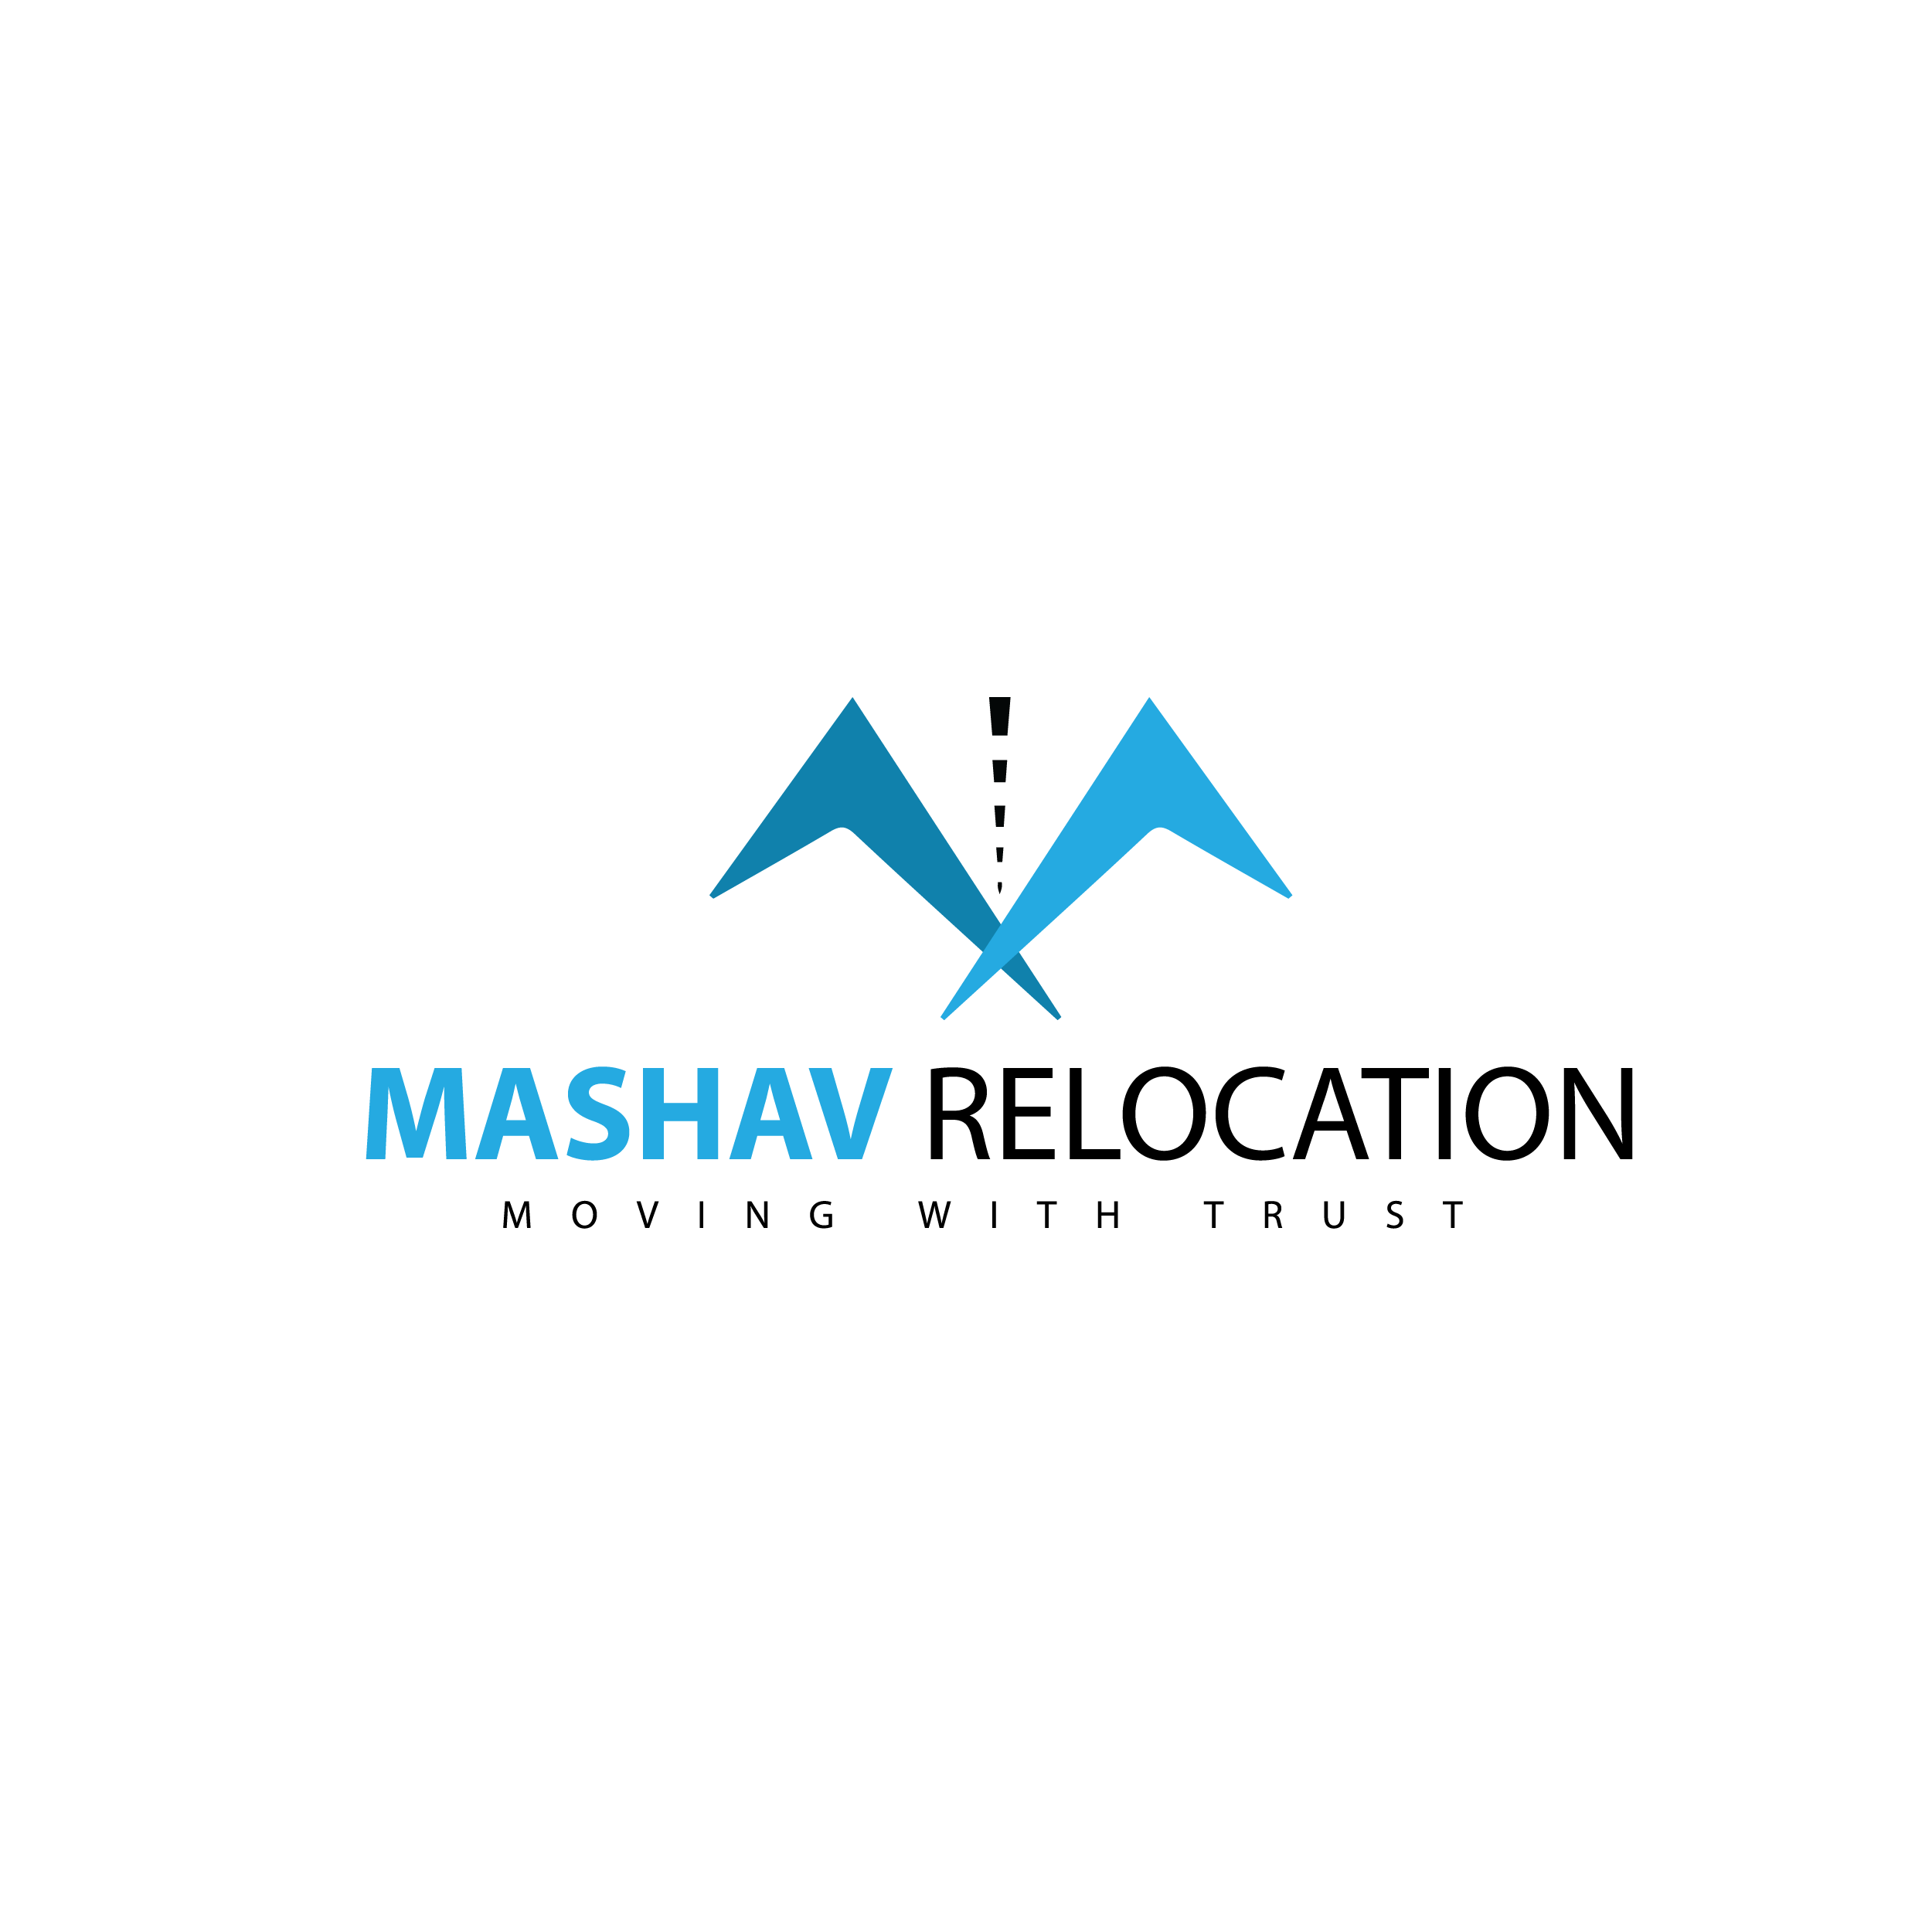 Mashav relocation